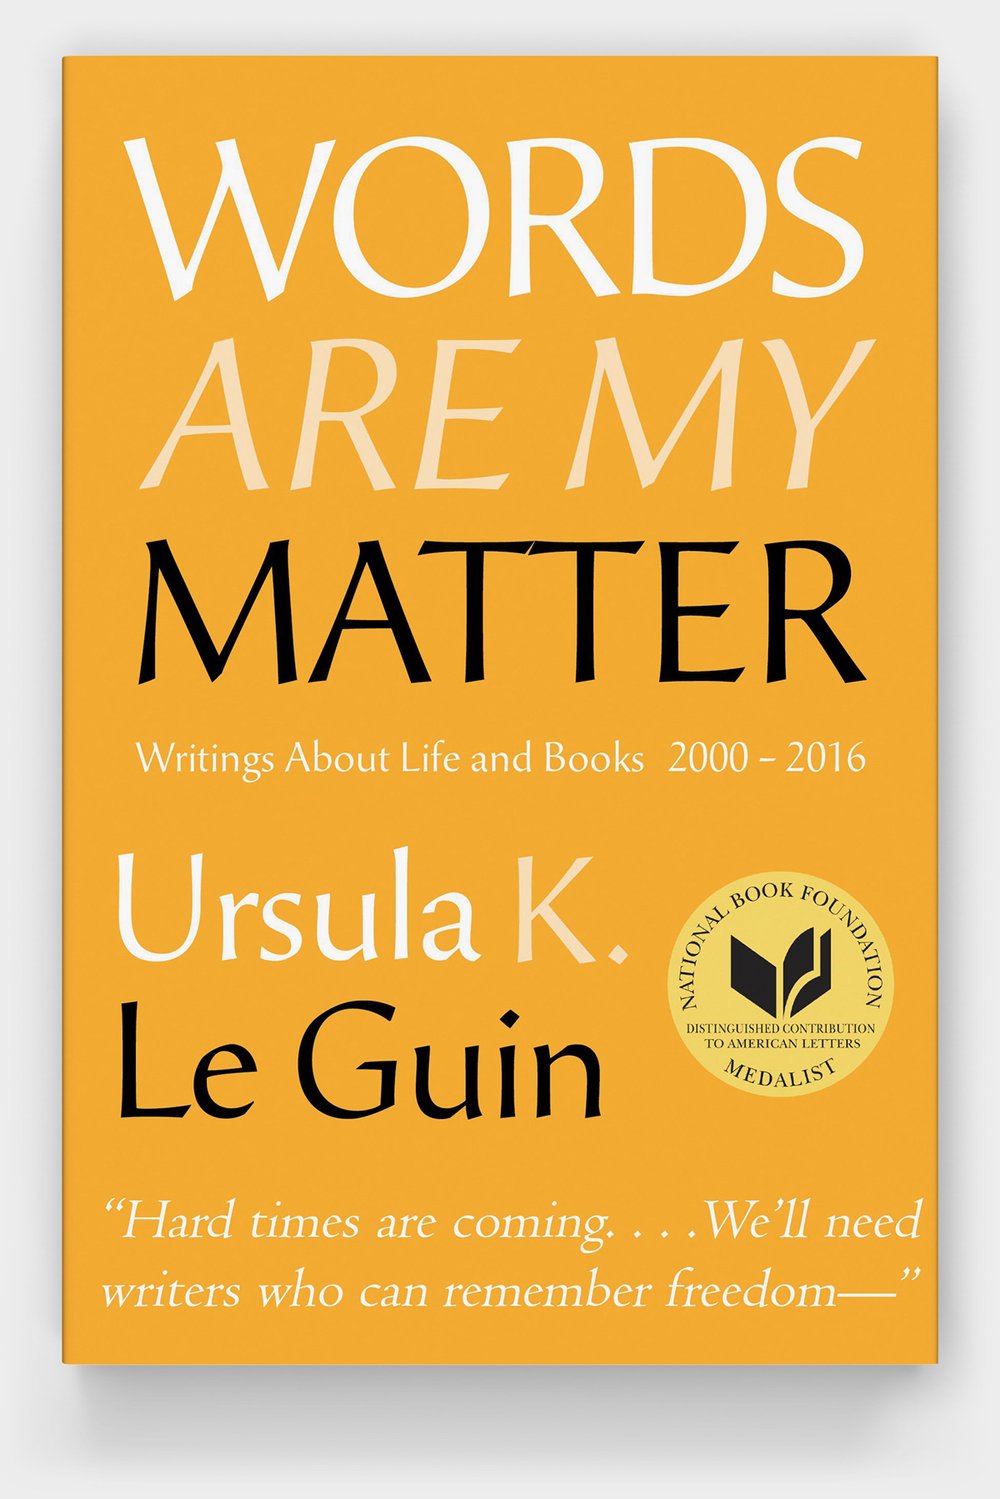 Ursula K. Le Guin - Từ ngữ là chất liệu của tôi: Với Ursula K. Le Guin, từ ngữ là chất liệu quan trọng để tạo dựng văn chương tuyệt vời. Hãy cùng xem bức ảnh đầy cảm hứng này và cảm nhận sự tôn trọng của ông đối với các chất liệu nghệ thuật.